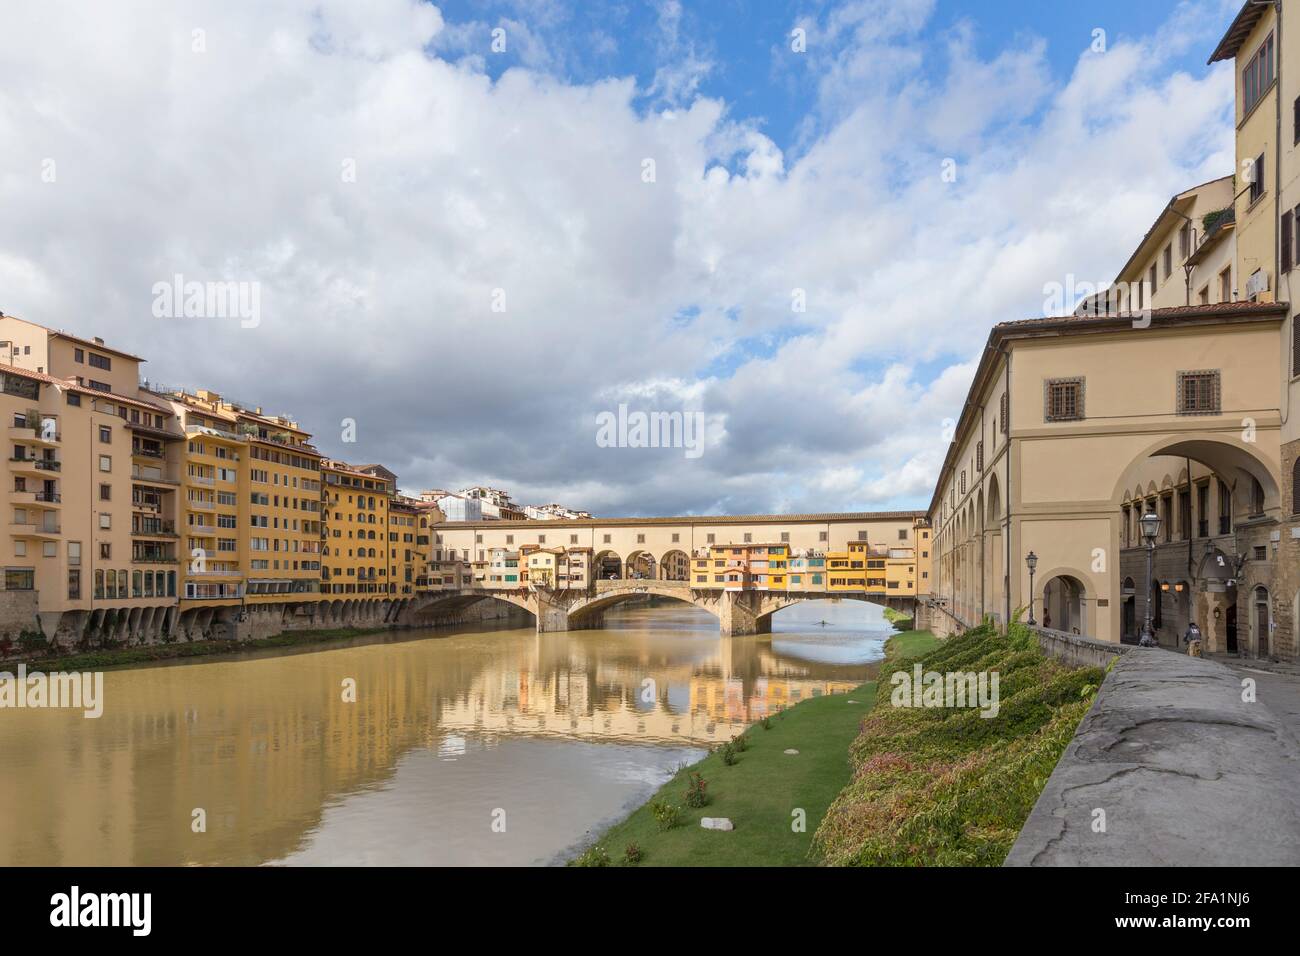 Ponte vecchio, Florence, Italy Stock Photo